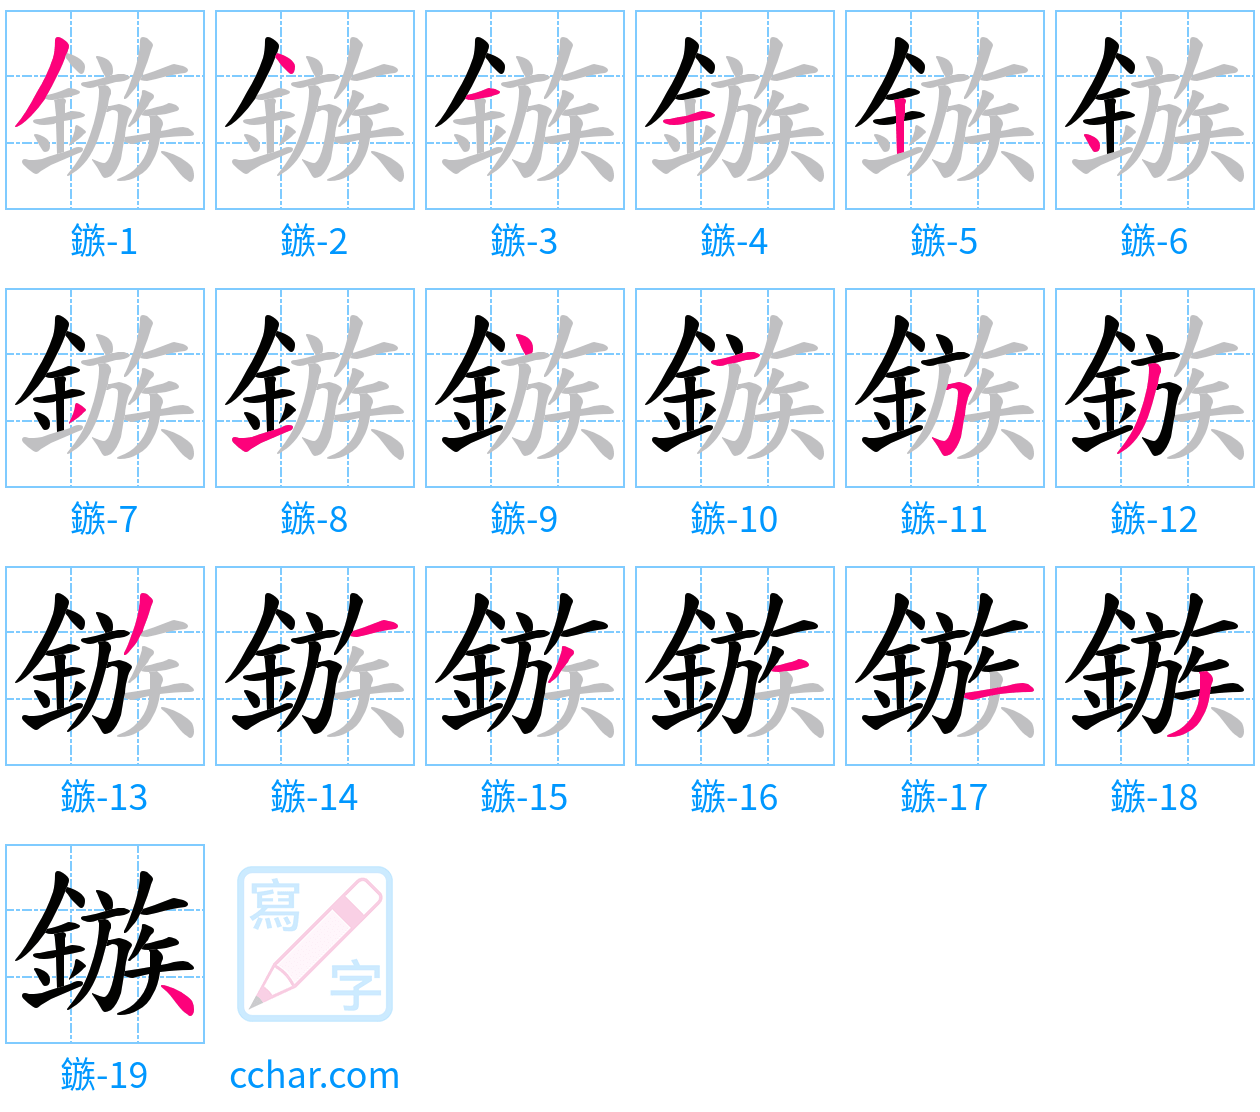 鏃 stroke order step-by-step diagram